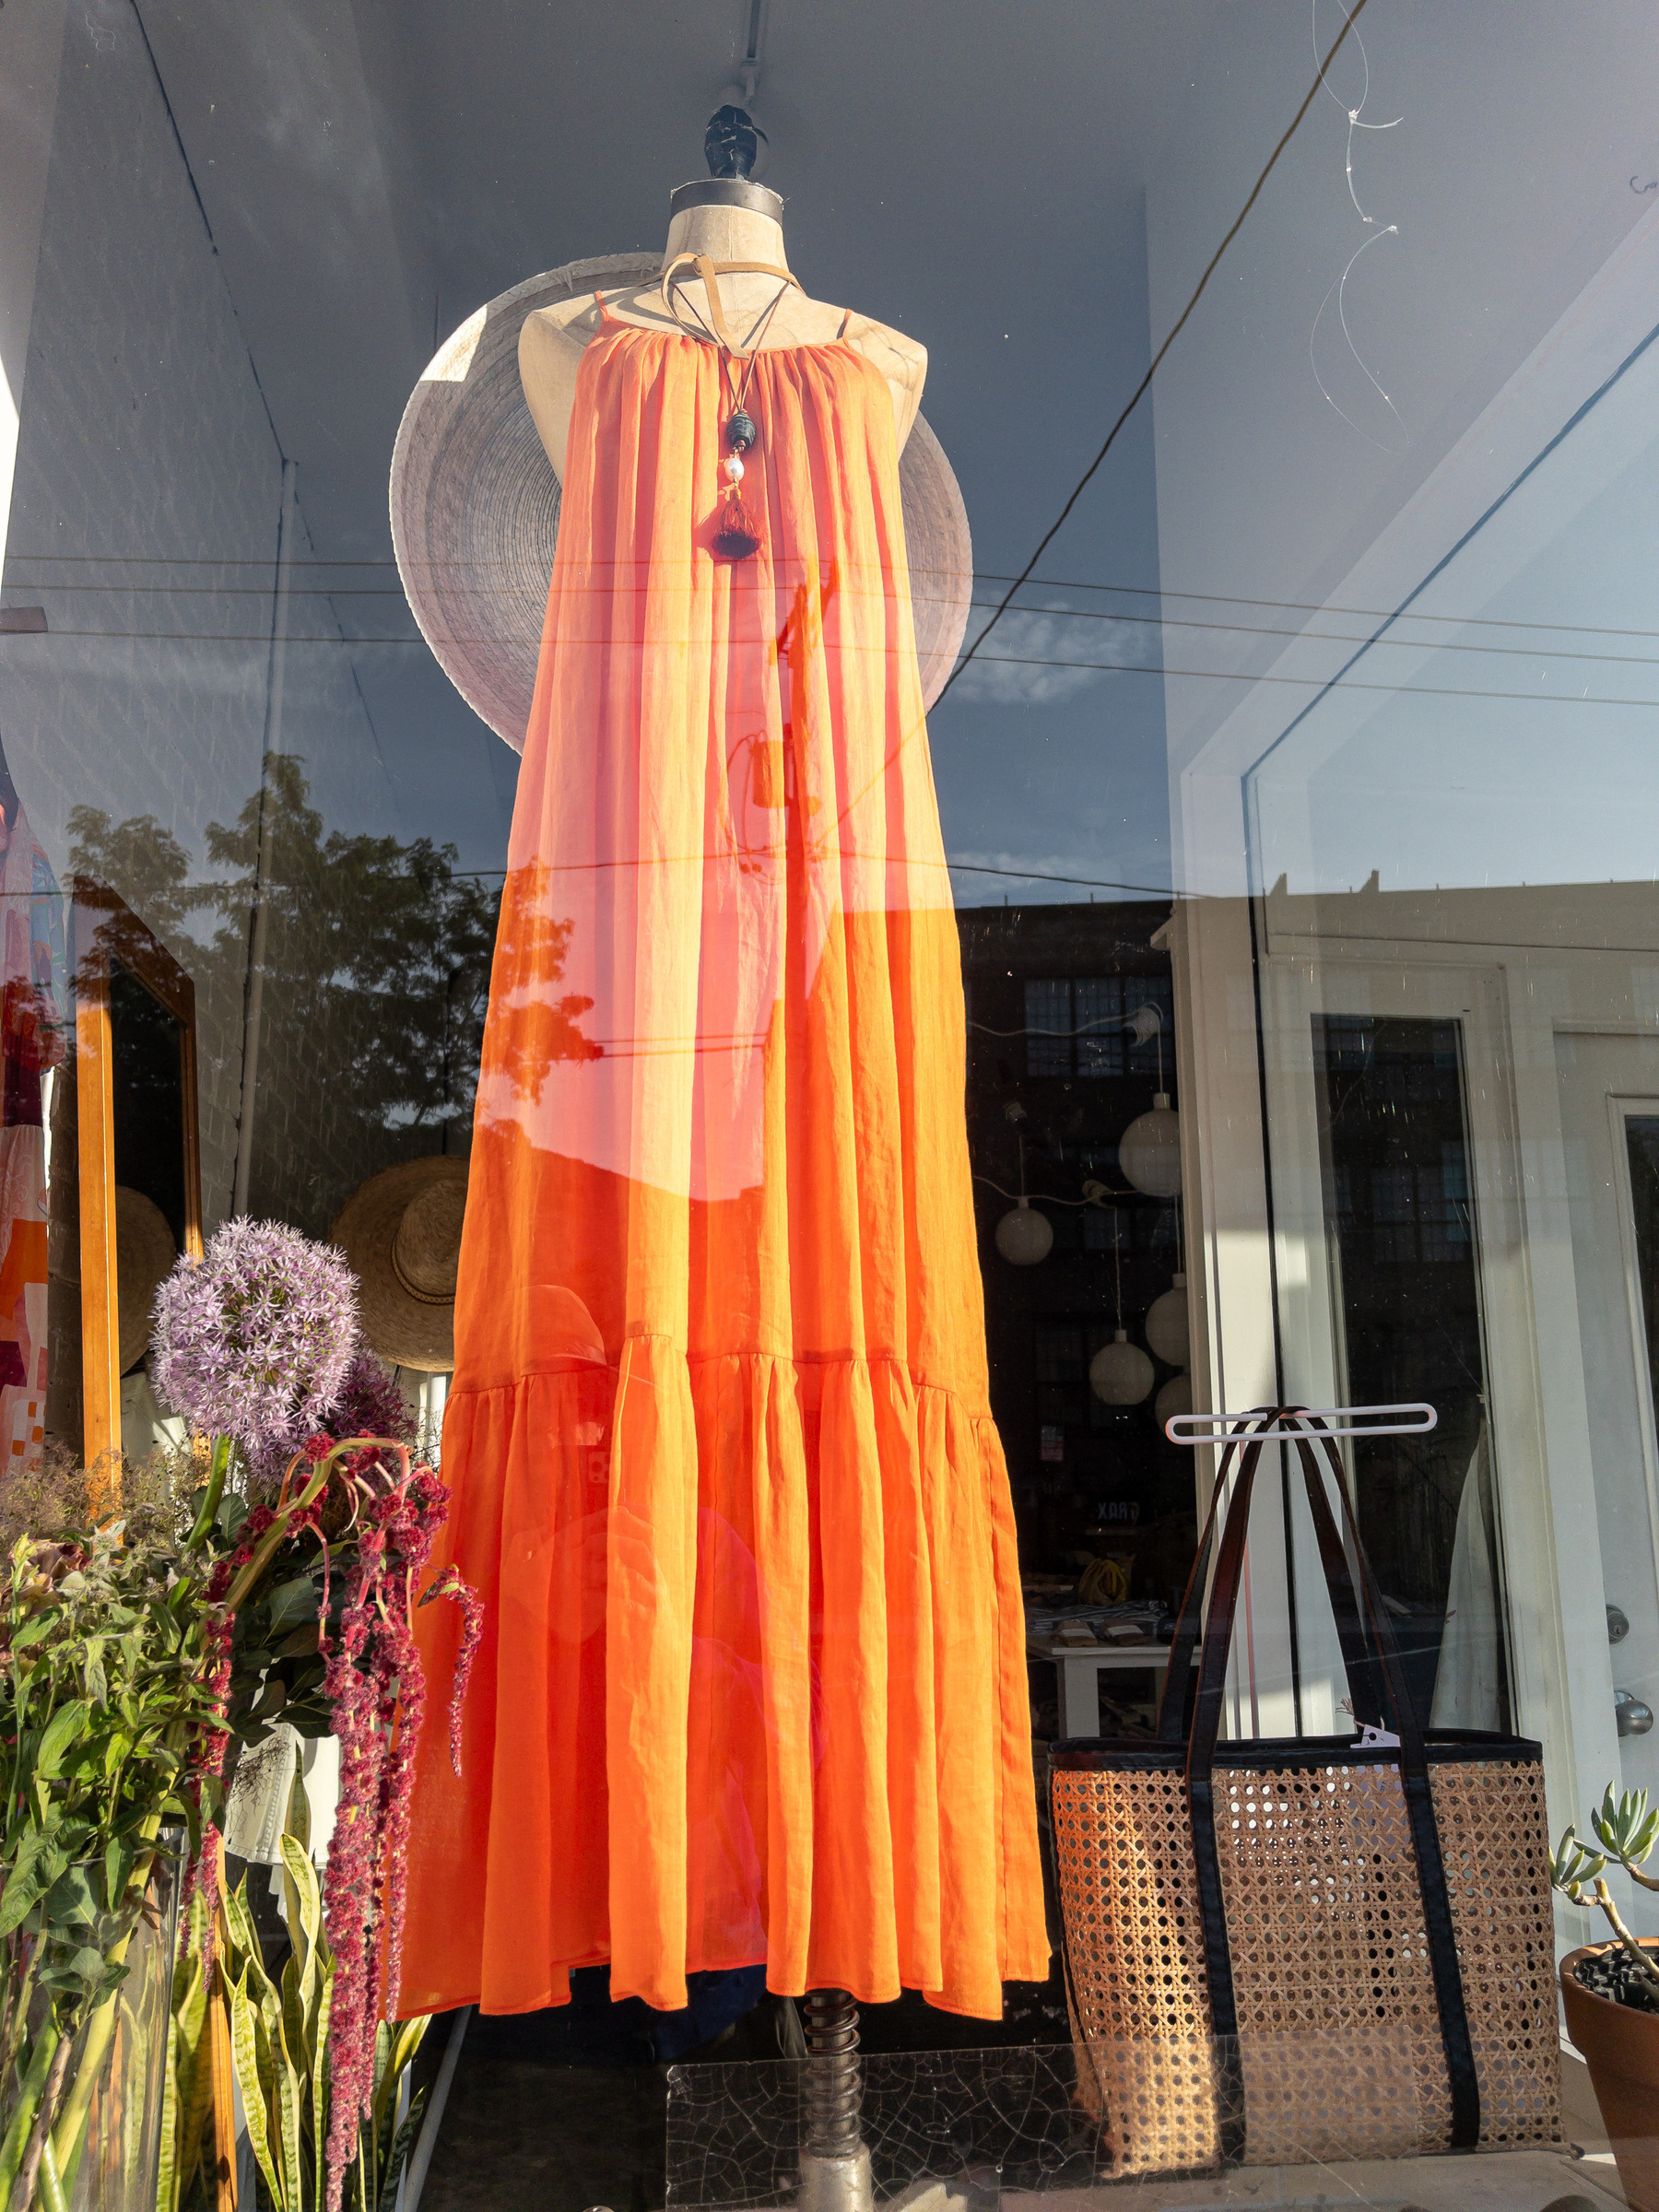 Orange sun dress in a shop window.